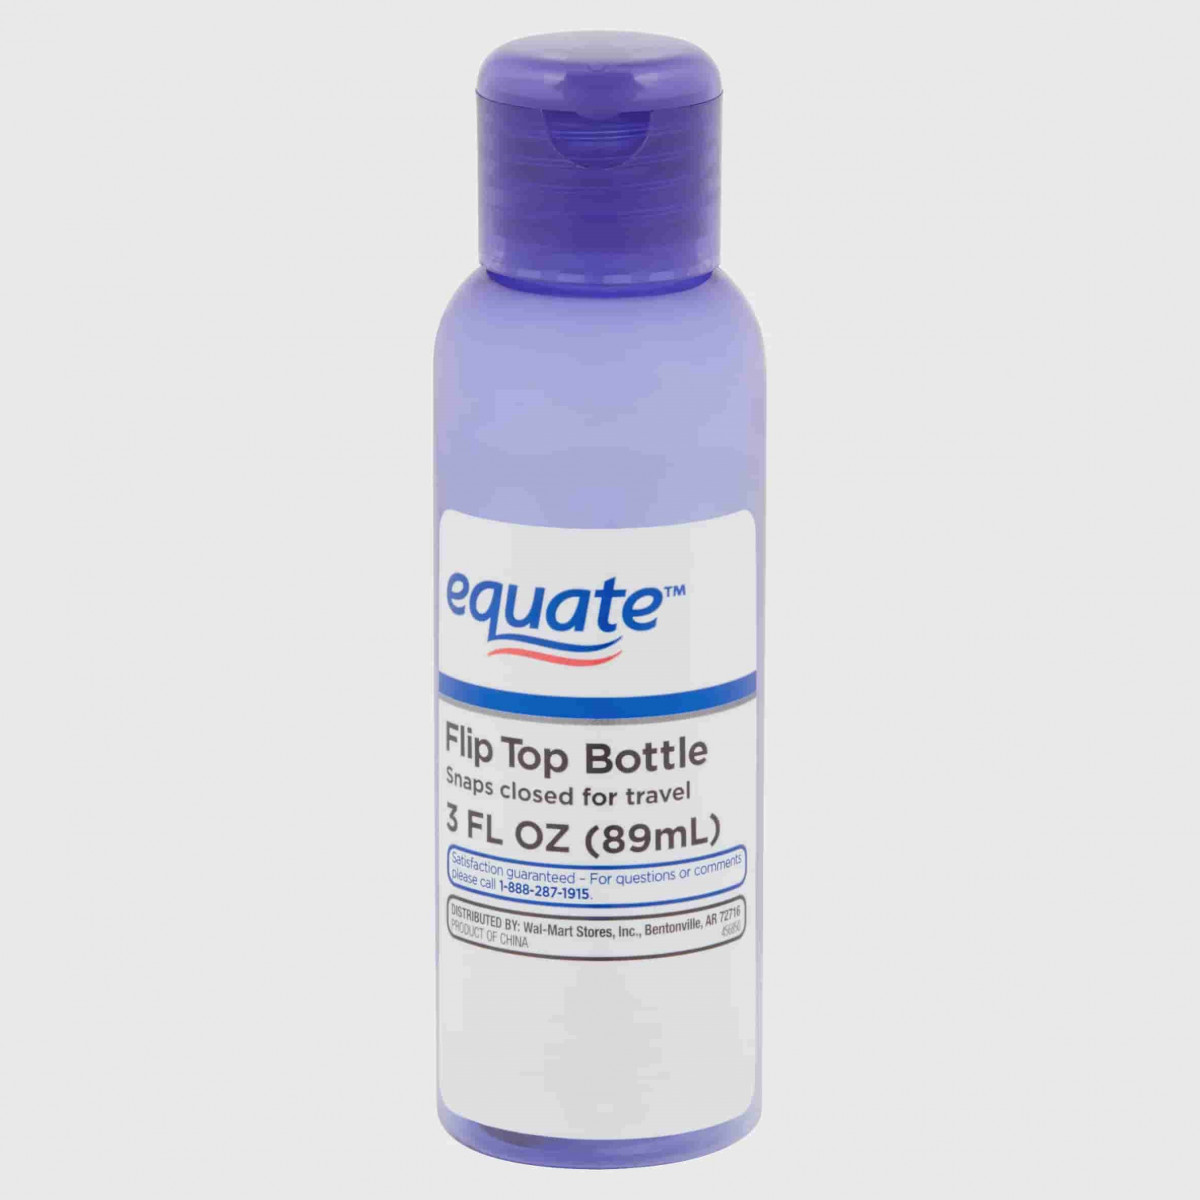 Equate Flip Top Travel Bottle - 3 oz